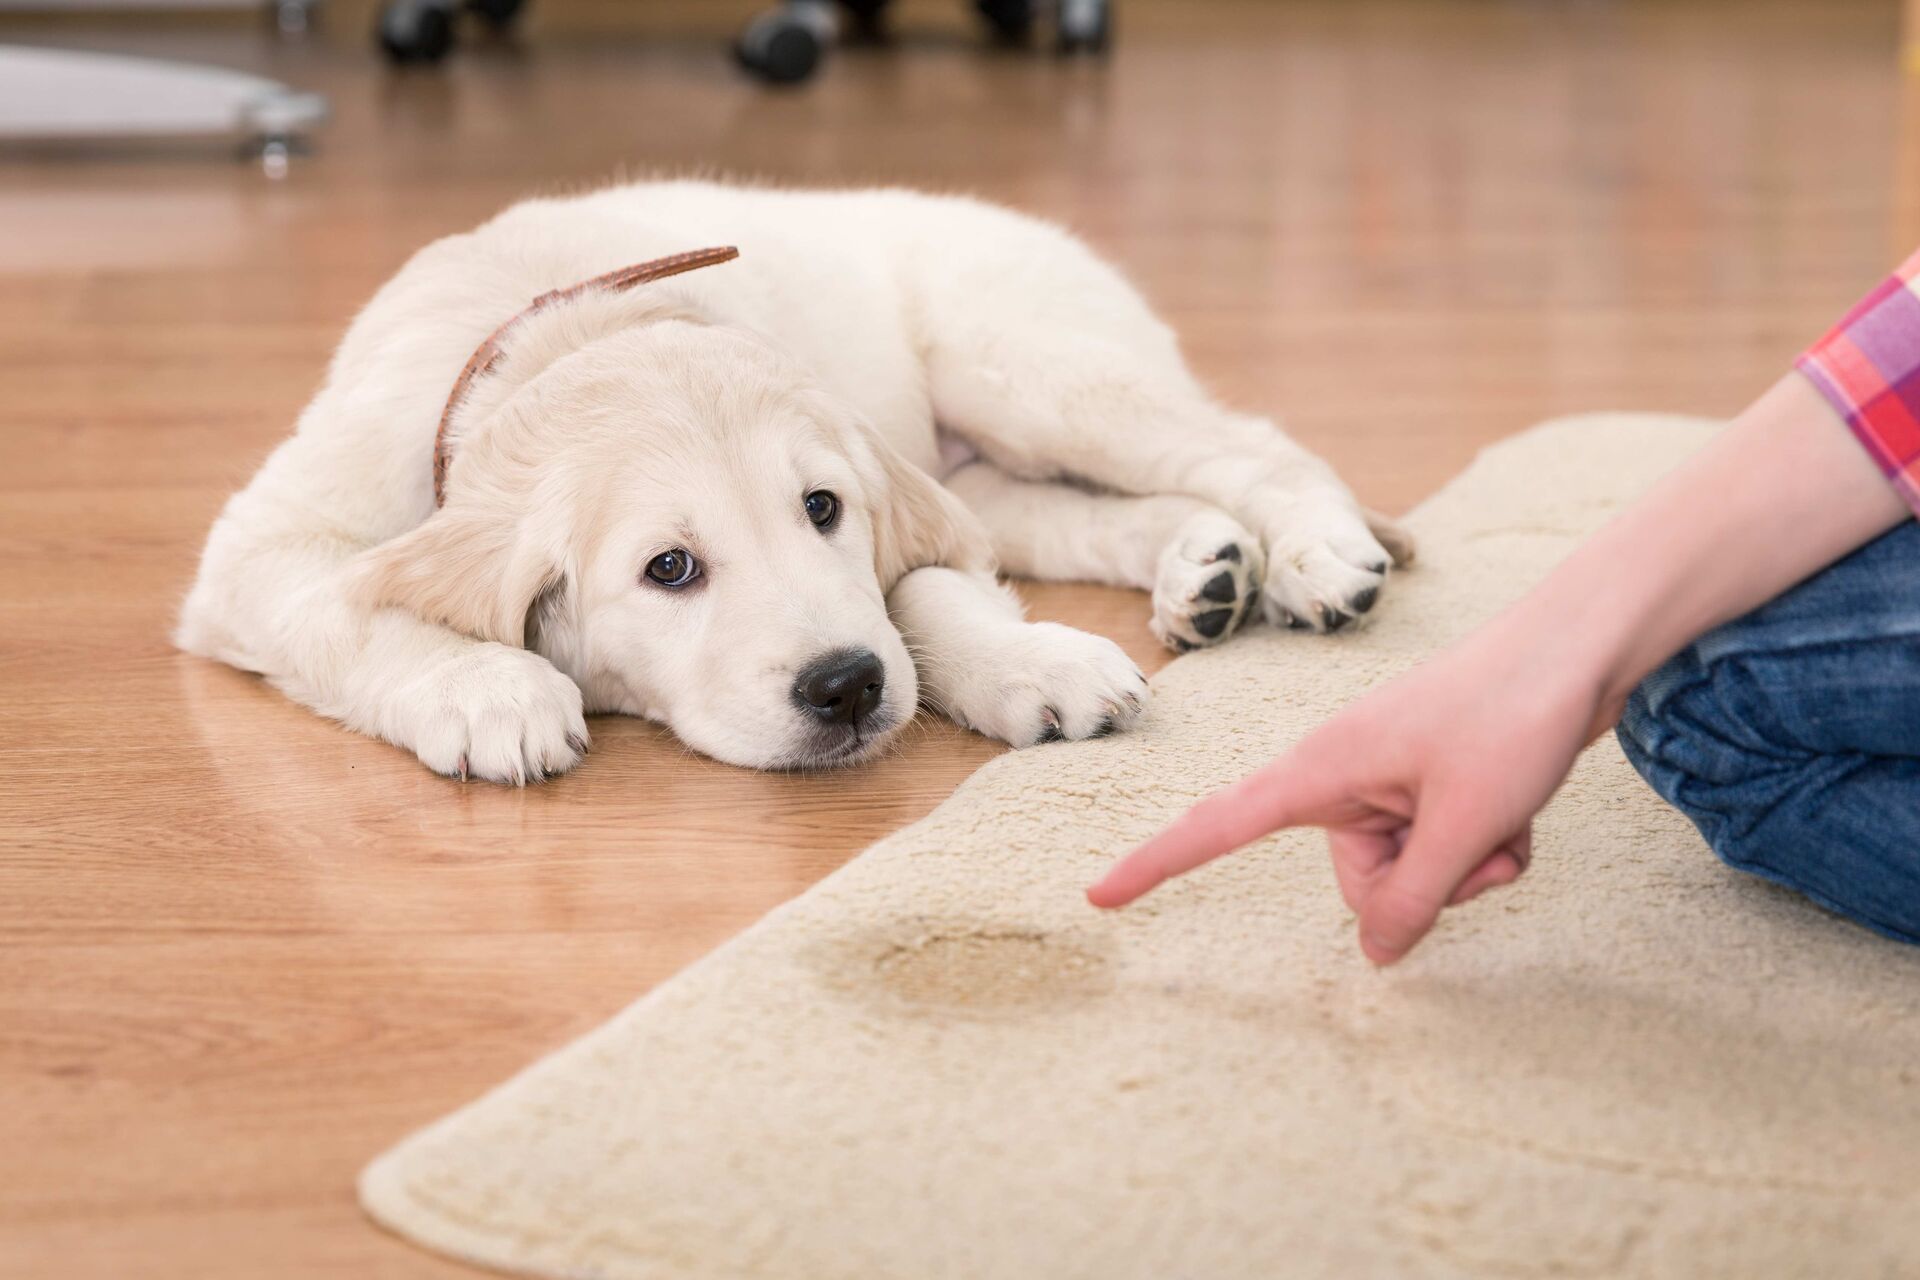 Labrador-Welpe liegt neben einem Teppich mit Urinfleck und schaut schuldbewusst in die Kamera.